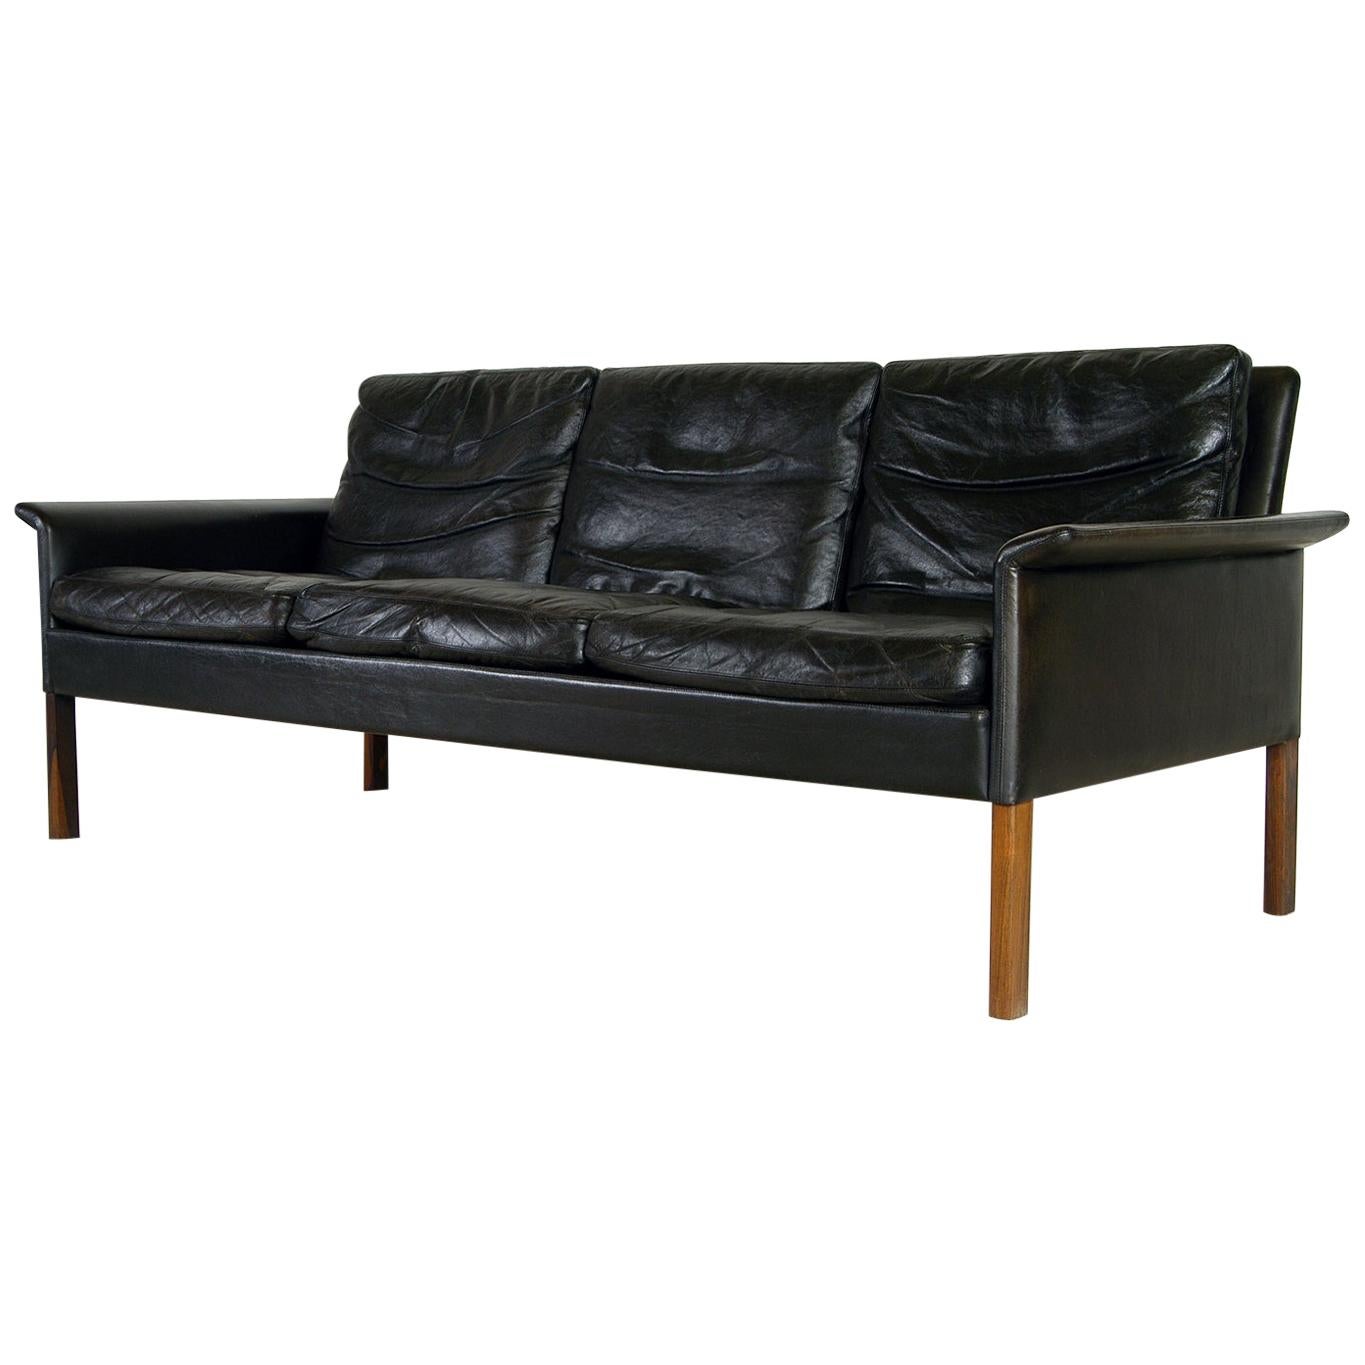 1960s Danish Midcentury Leather Sofa by Hans Olsen for Christian Sorensen